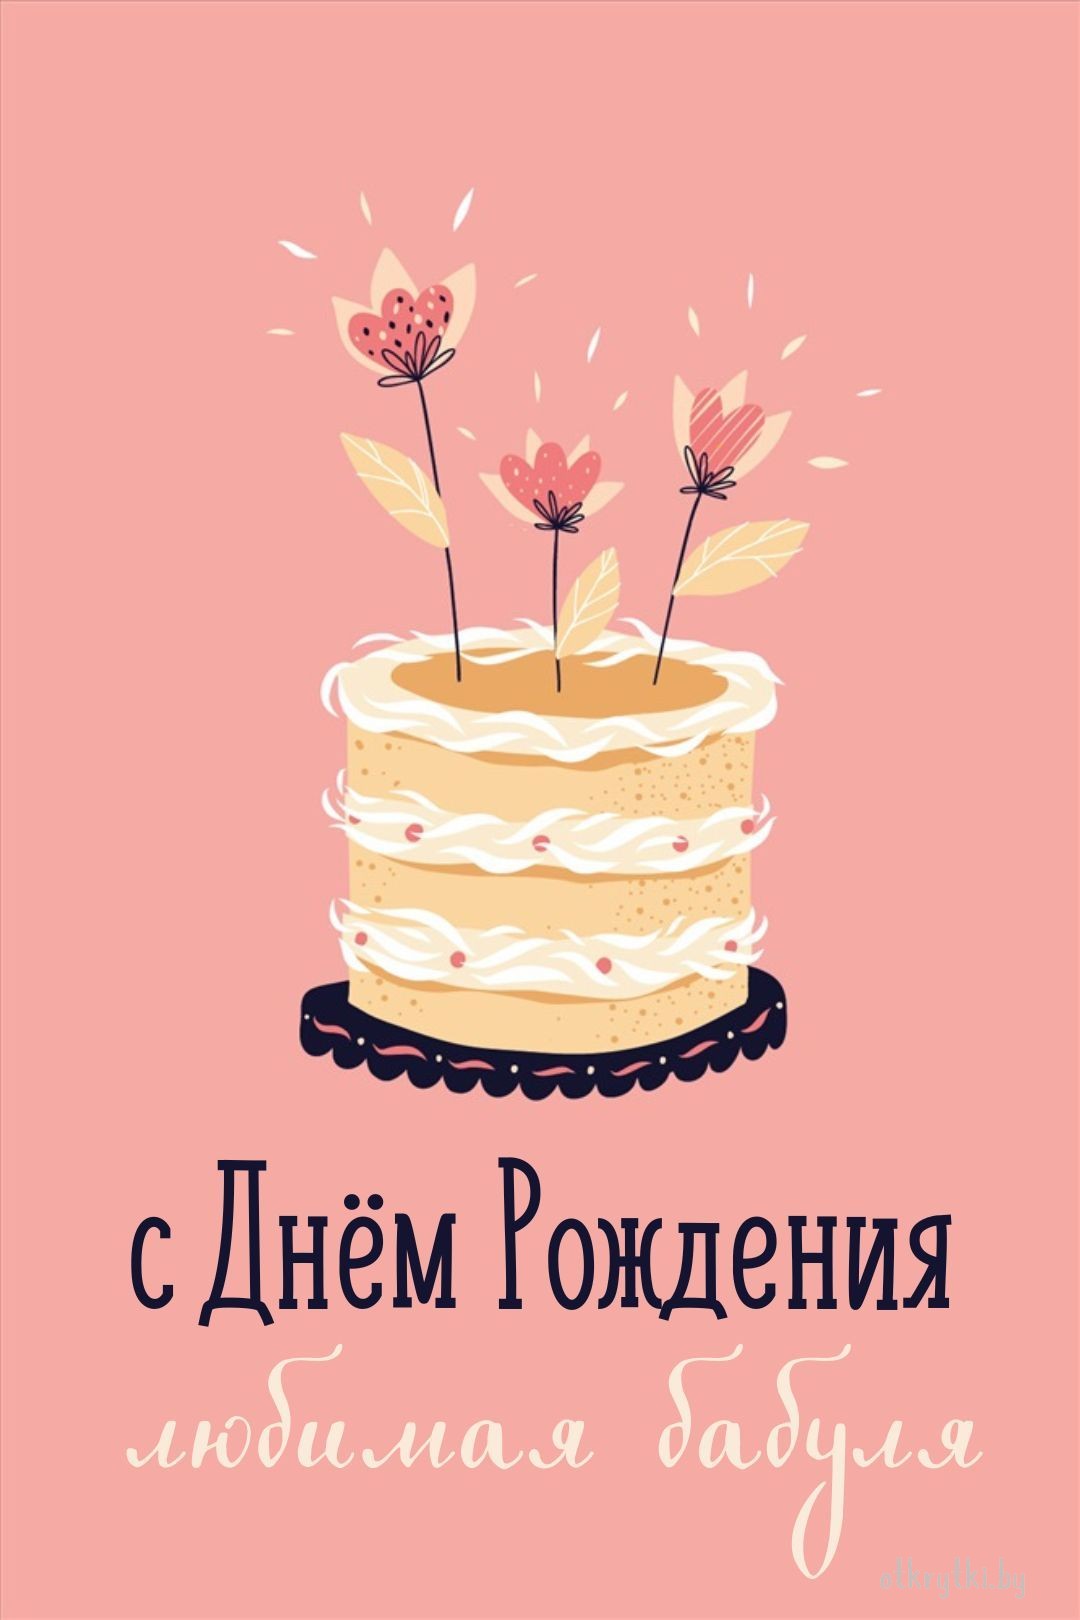 Замечательная открытка с днем рождения старушка